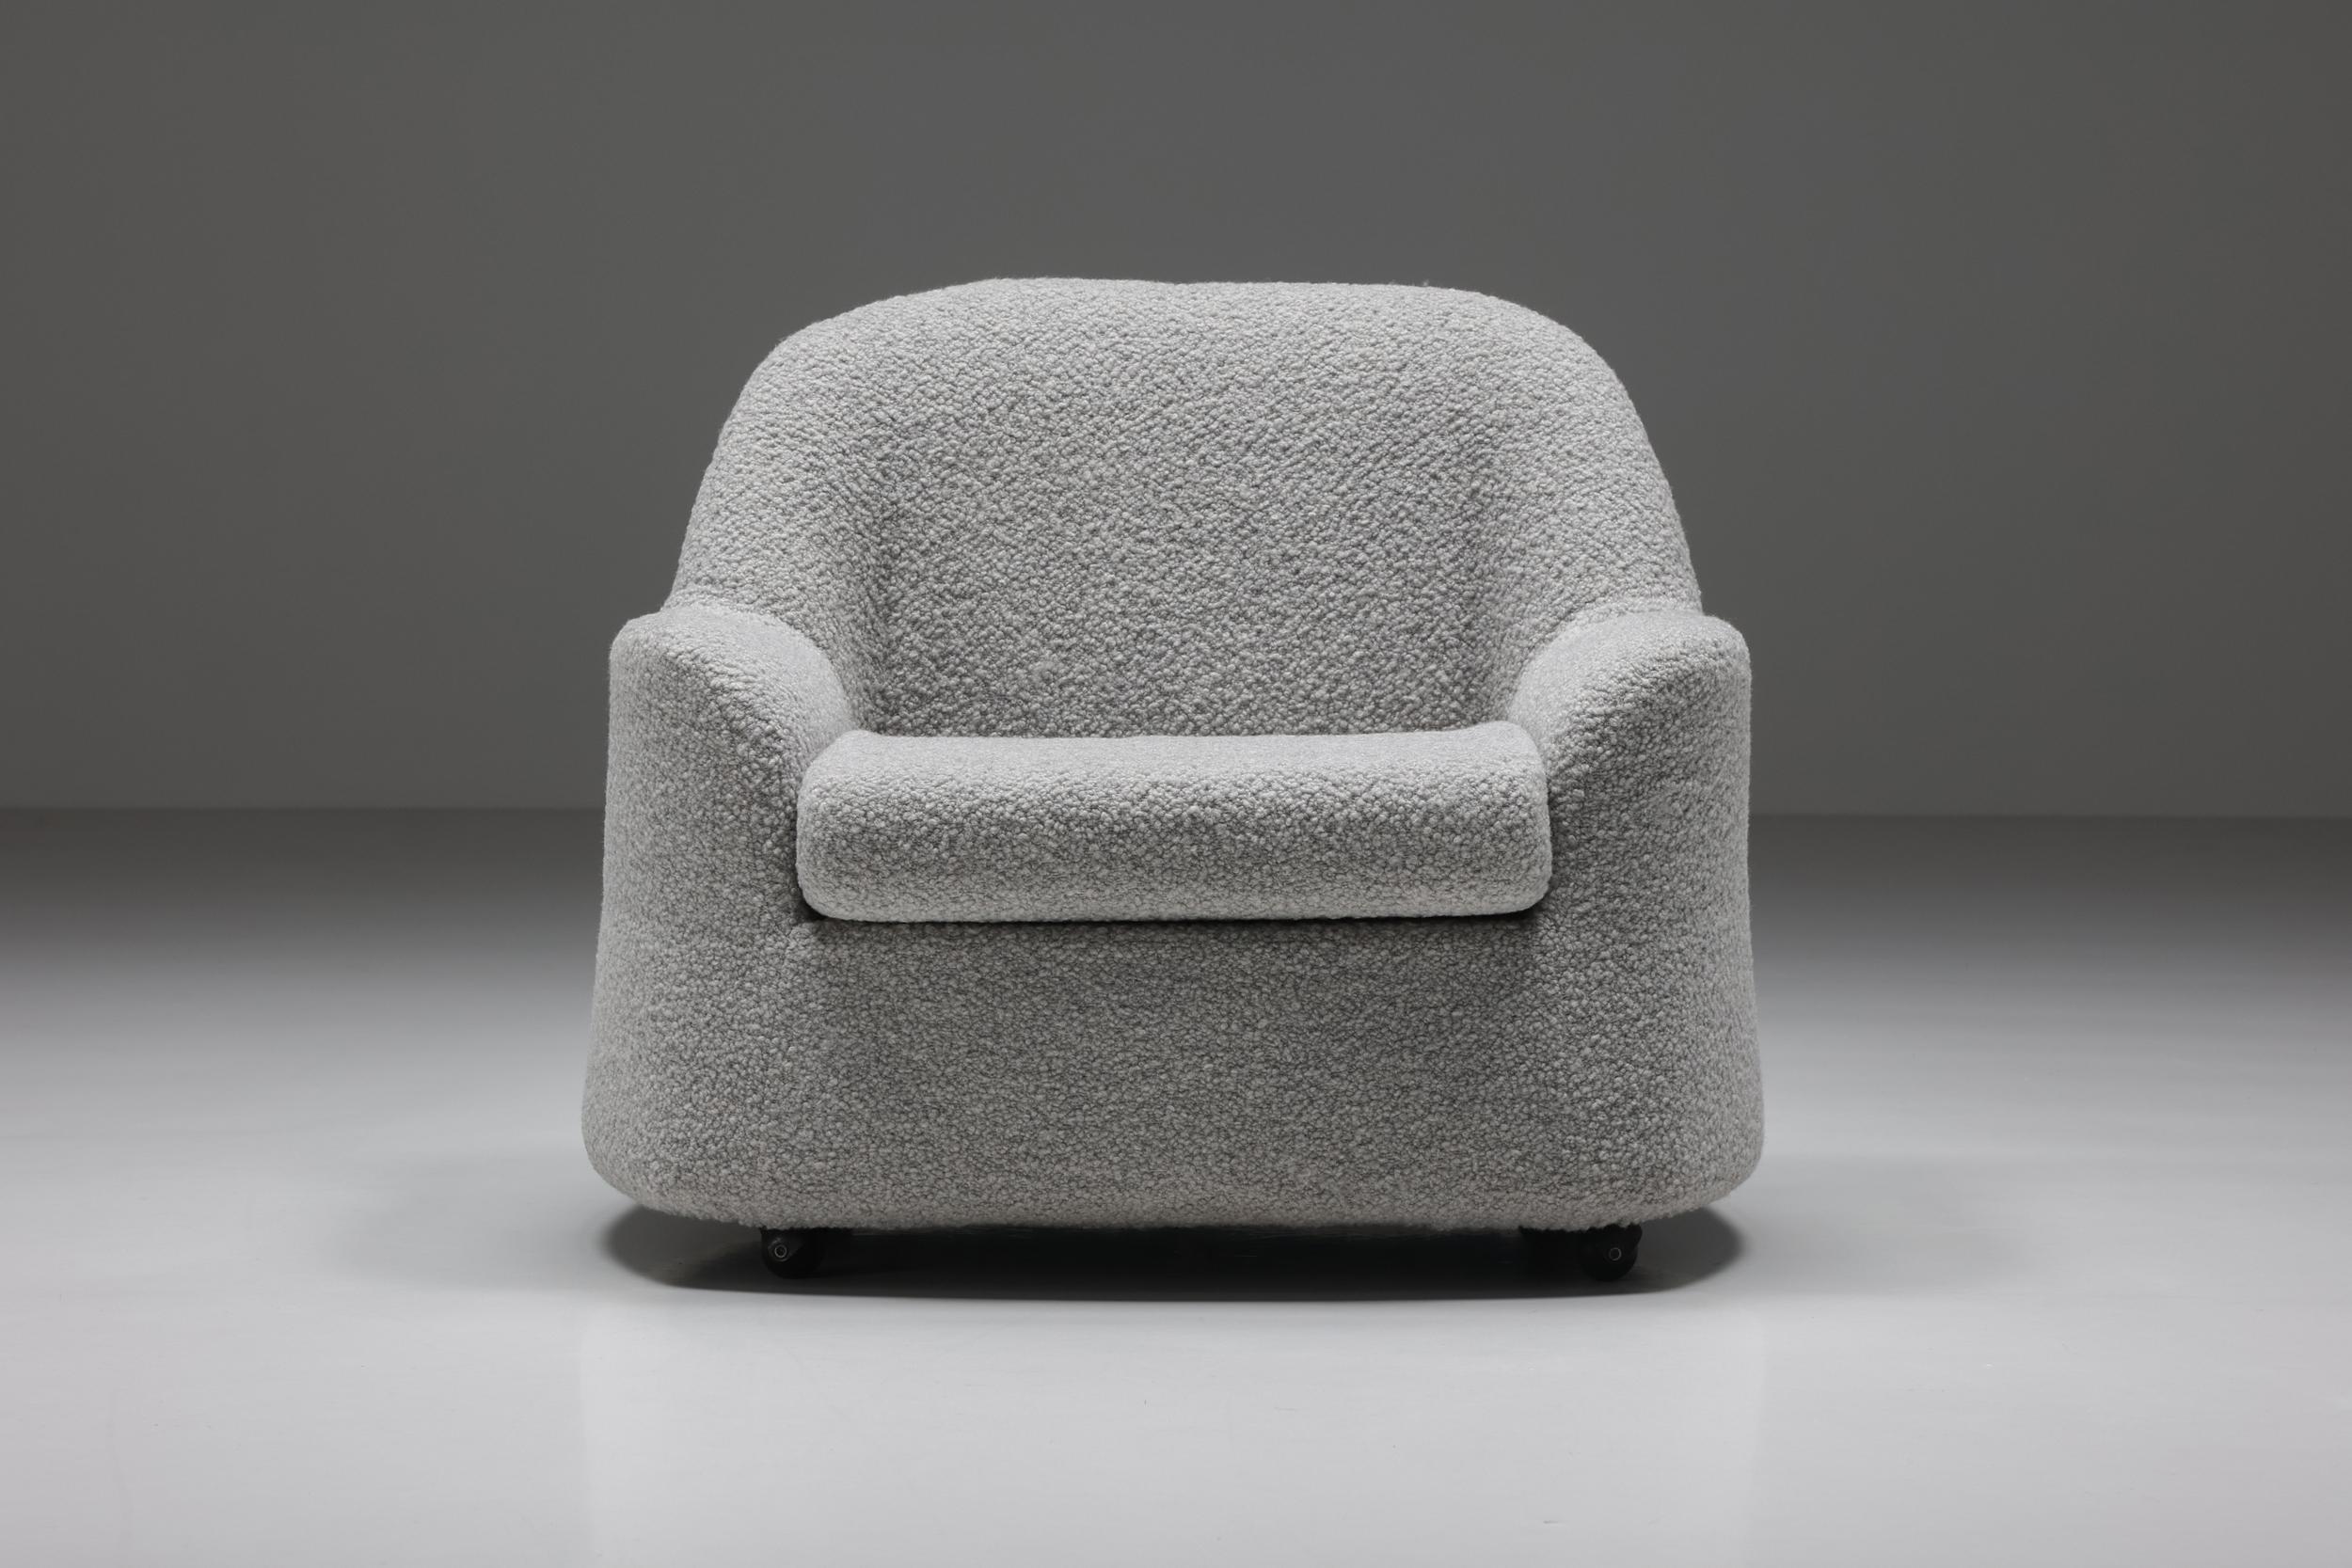 Afra & Tobia Scarpa Sessel, gepolstert mit grauer Bouclé-Wolle, entworfen in Italien in den 1960er Jahren. Ein seltenes Exemplar des italienischen Scarpa-Werks. Bequemer Loungesessel, in ausgezeichnetem Zustand. Ein robustes und doch elegantes